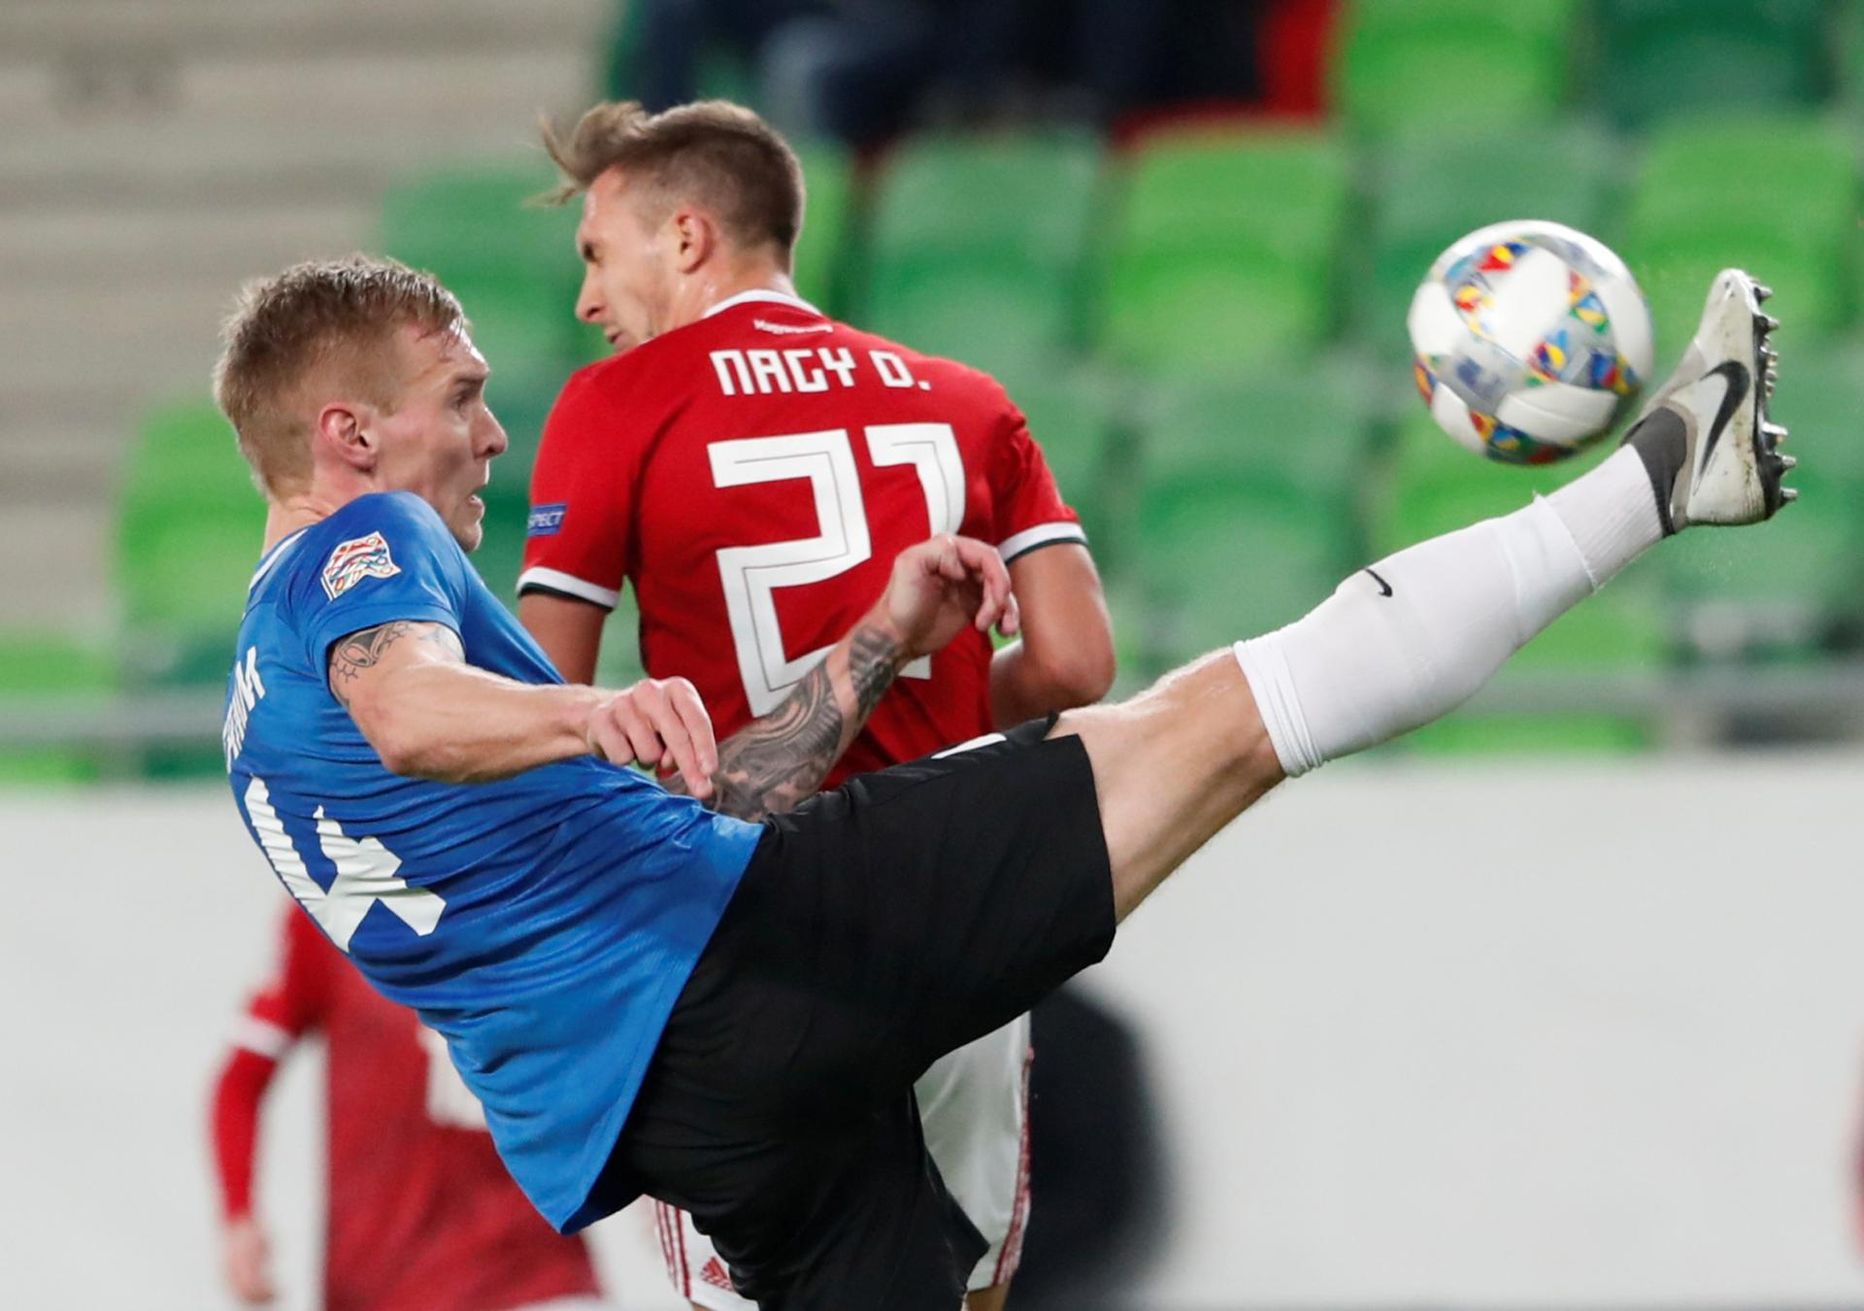 Novembris Budapestis peetud UEFA Rahvuste liiga kohtumises Ungariga oli Joonas Tamm Eesti koondise koosseisus platsil kogu mängu. Ungari oli Eestist küll 2:0 üle.